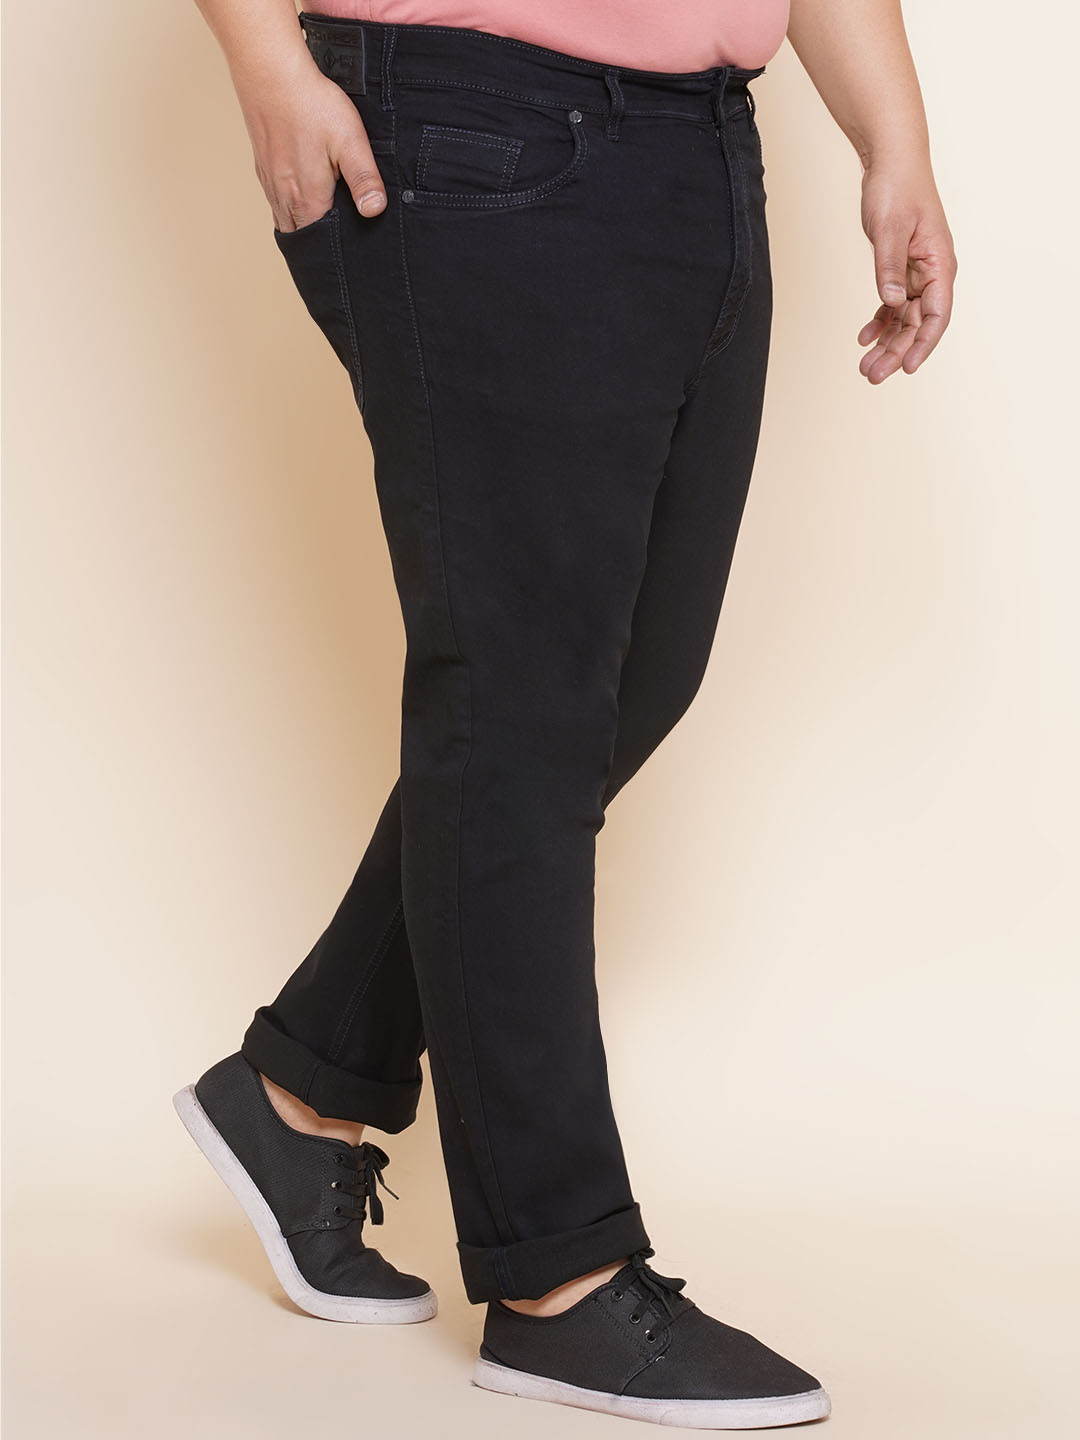 bottomwear/jeans/EJPJ25107/ejpj25107-3.jpg